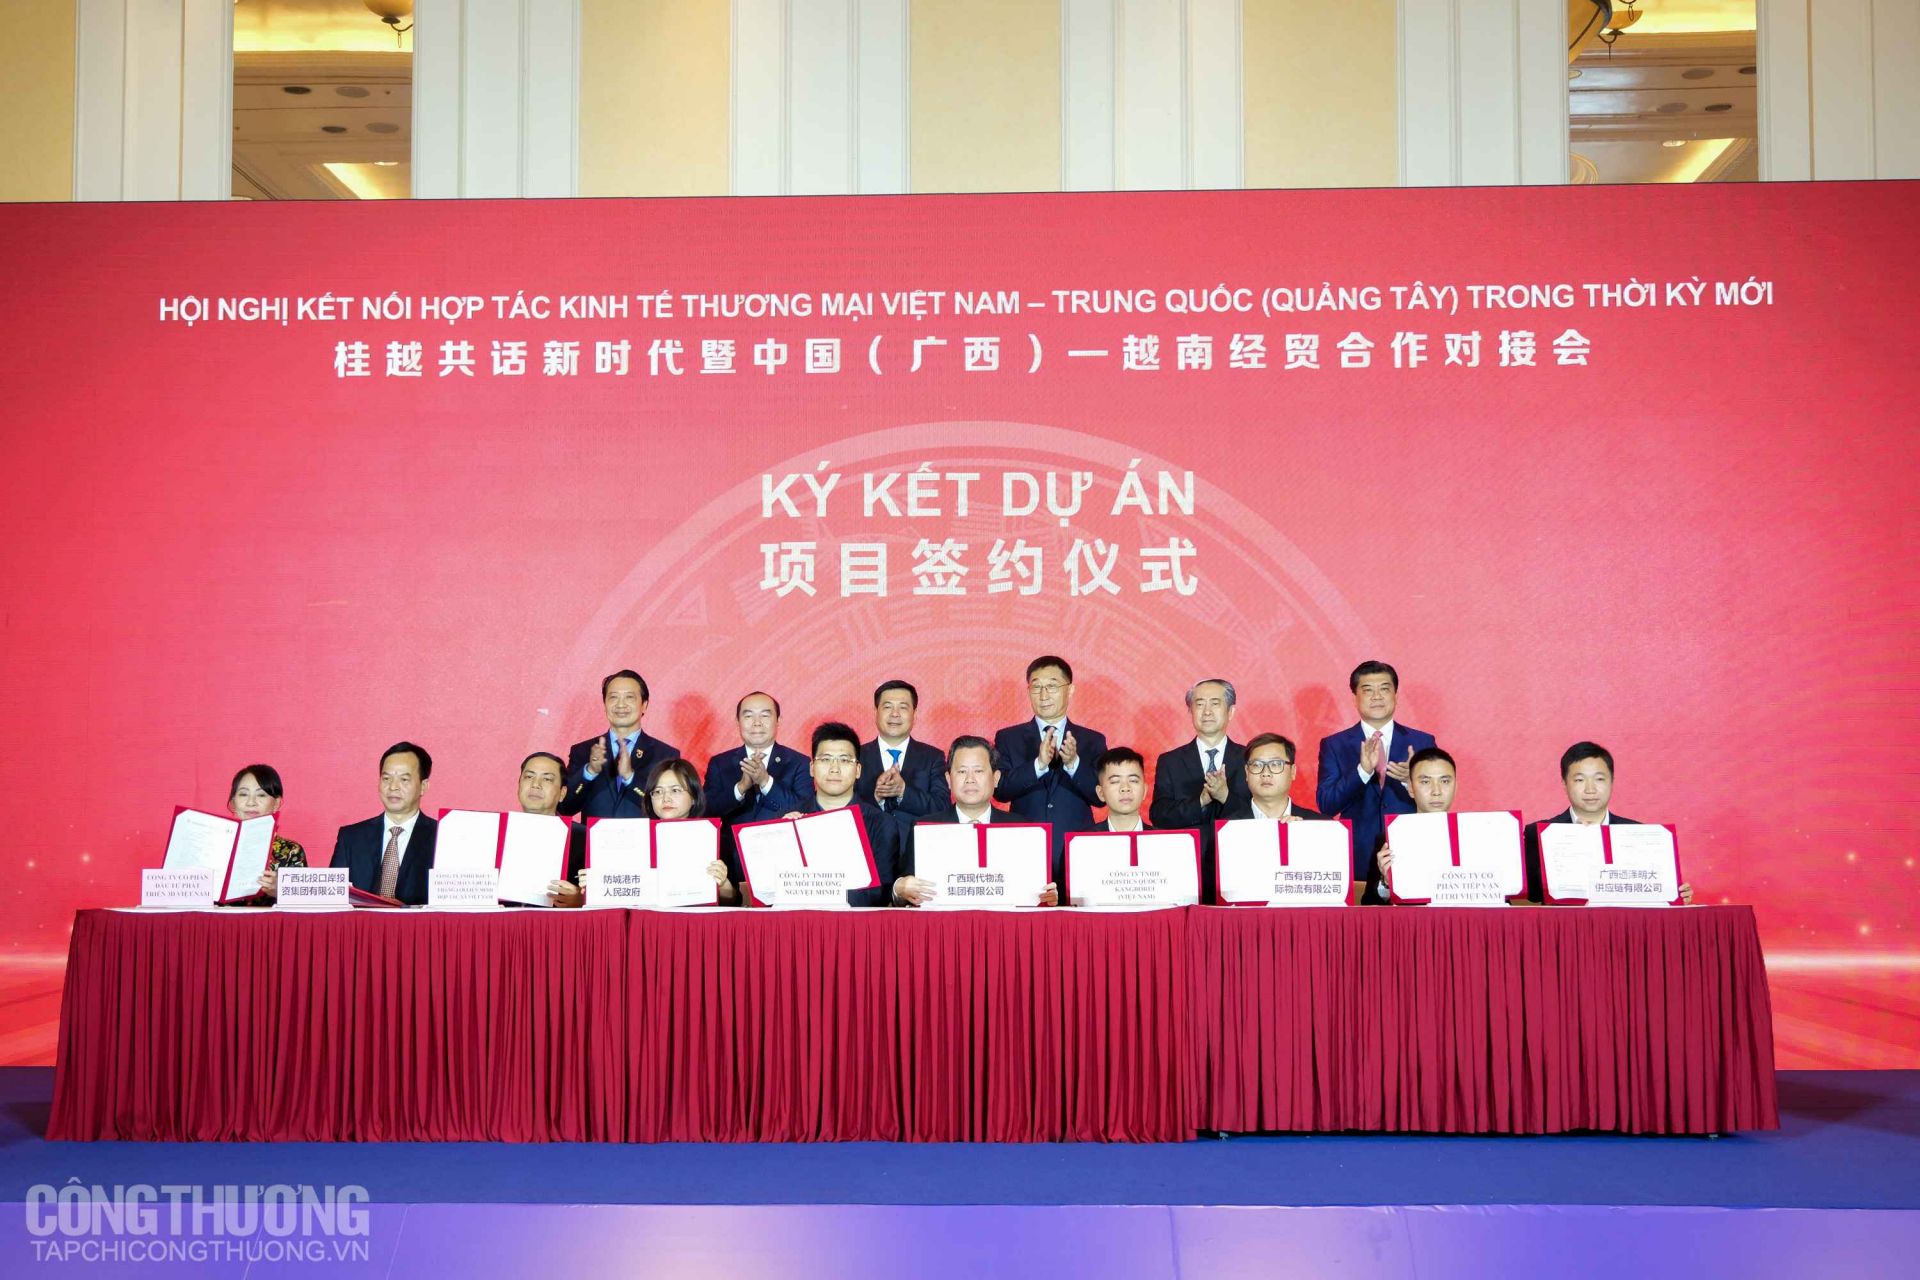 Hội nghị kết nối hợp tác kinh tế thương mại Việt Nam – Trung Quốc (Quảng Tây) trong thời kỳ mới chứng kiến các doanh nghiệp hai bên ký kết nhiều Thỏa thuận hợp tác